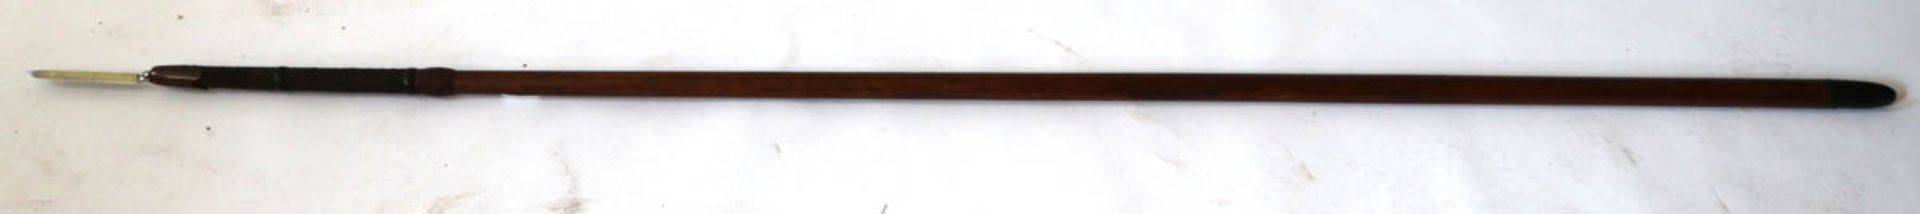 Kriegs-Yari, Japan Edo-Zeit 19. Jh. Pfeilförmige zweischneidige Klinge. Langer Holzgriff. - Bild 3 aus 3